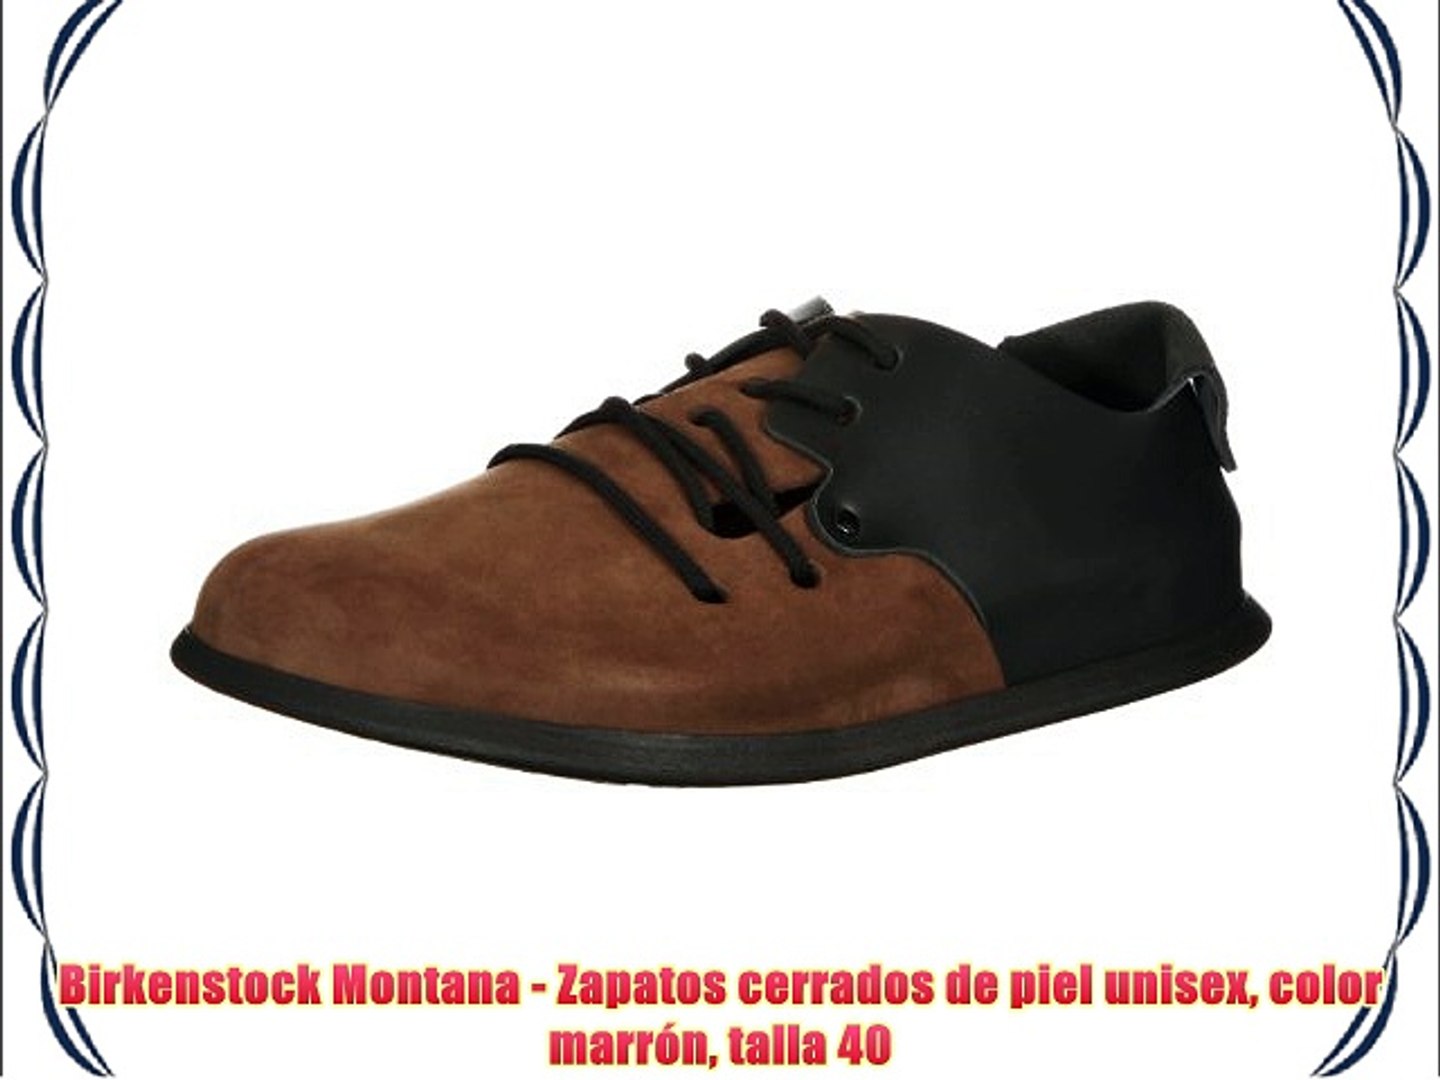 Birkenstock Montana - Zapatos cerrados de piel unisex color marrón talla 40  - video Dailymotion